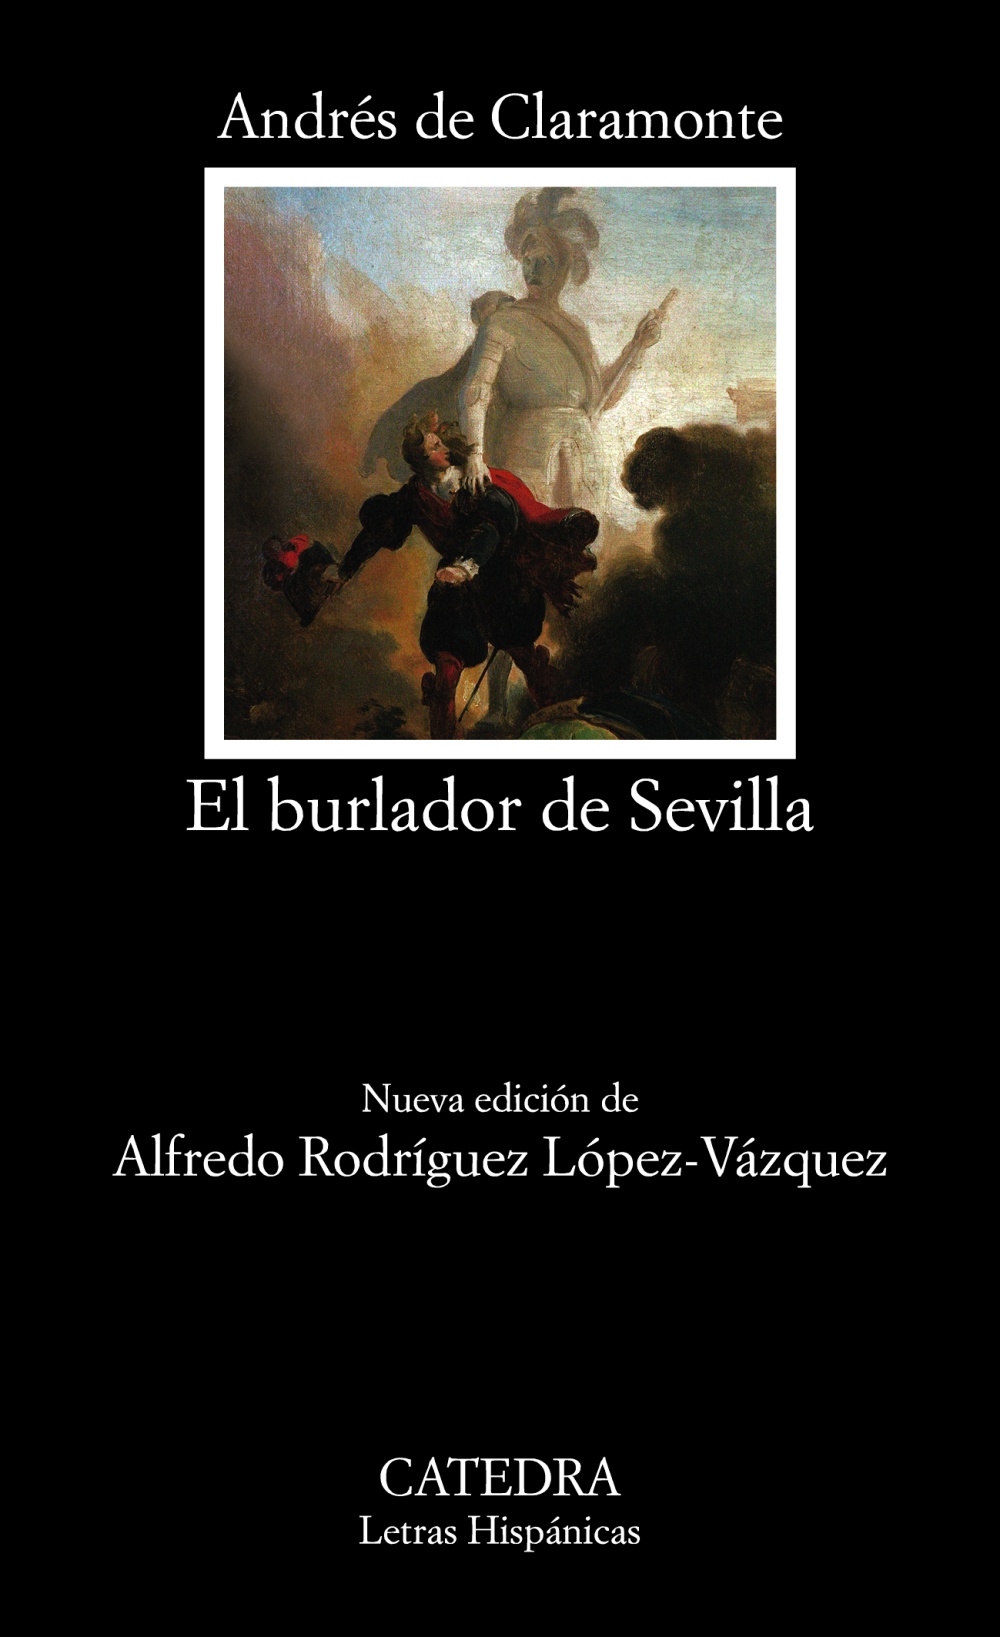 Tirso de Molina: El burlador de Sevilla, o, El convidado de piedra (Spanish language, 2007, Catedra)